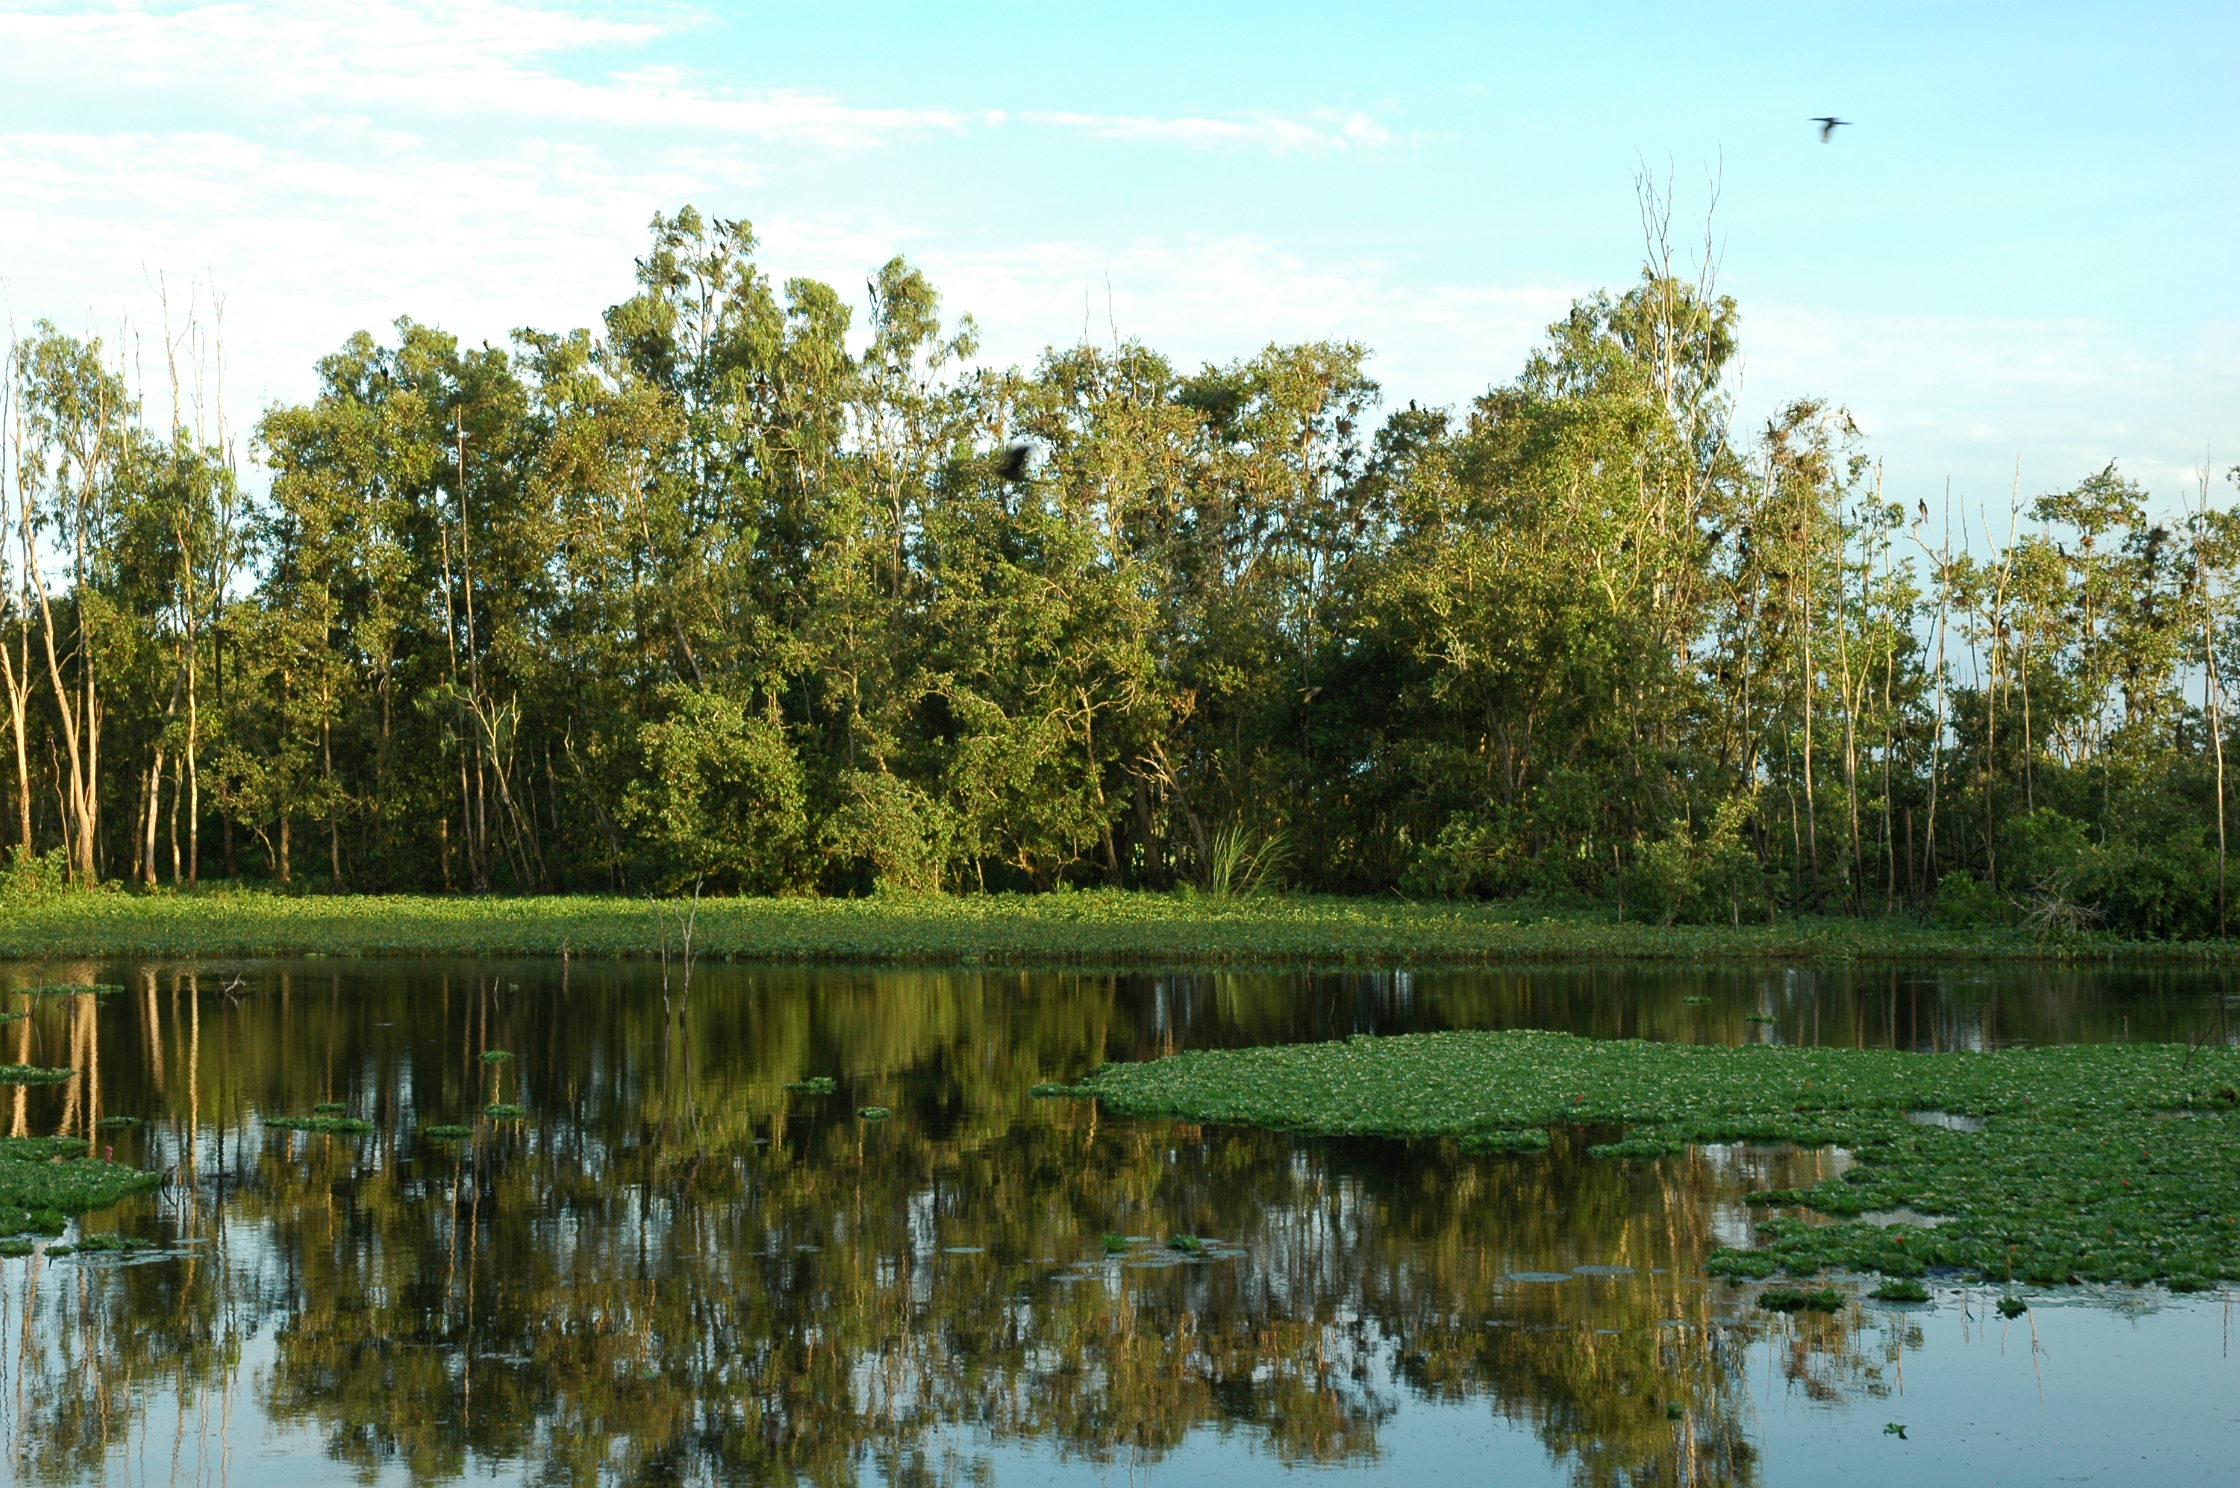 Khu bảo tồn đất ngập nước Láng Sen được mệnh danh là vùng đất sinh thái